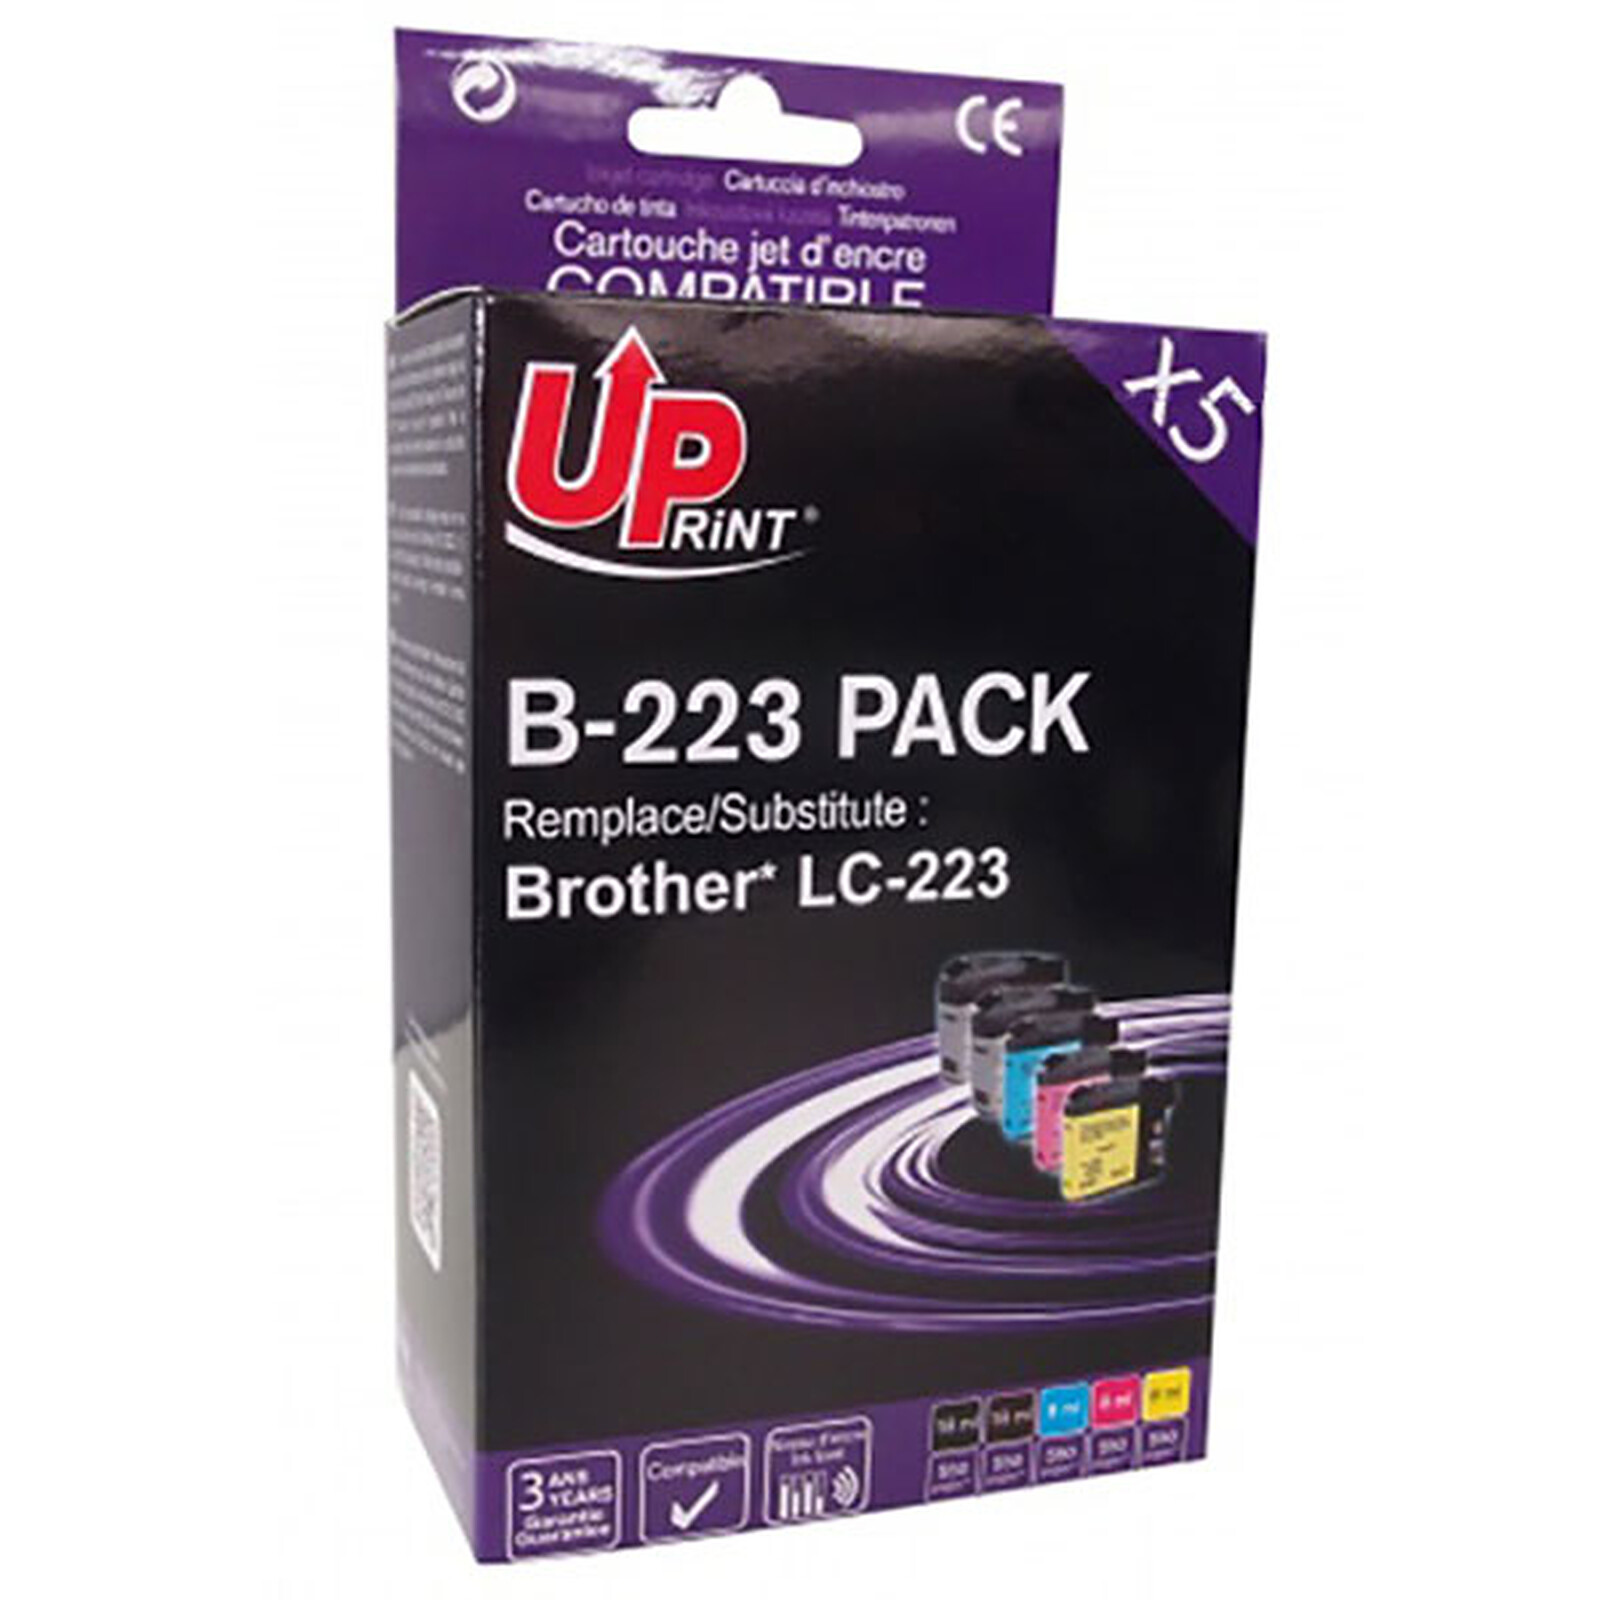 Uprint 912XL, Pack de 4 cartouches d'encre Uprint compatible HP